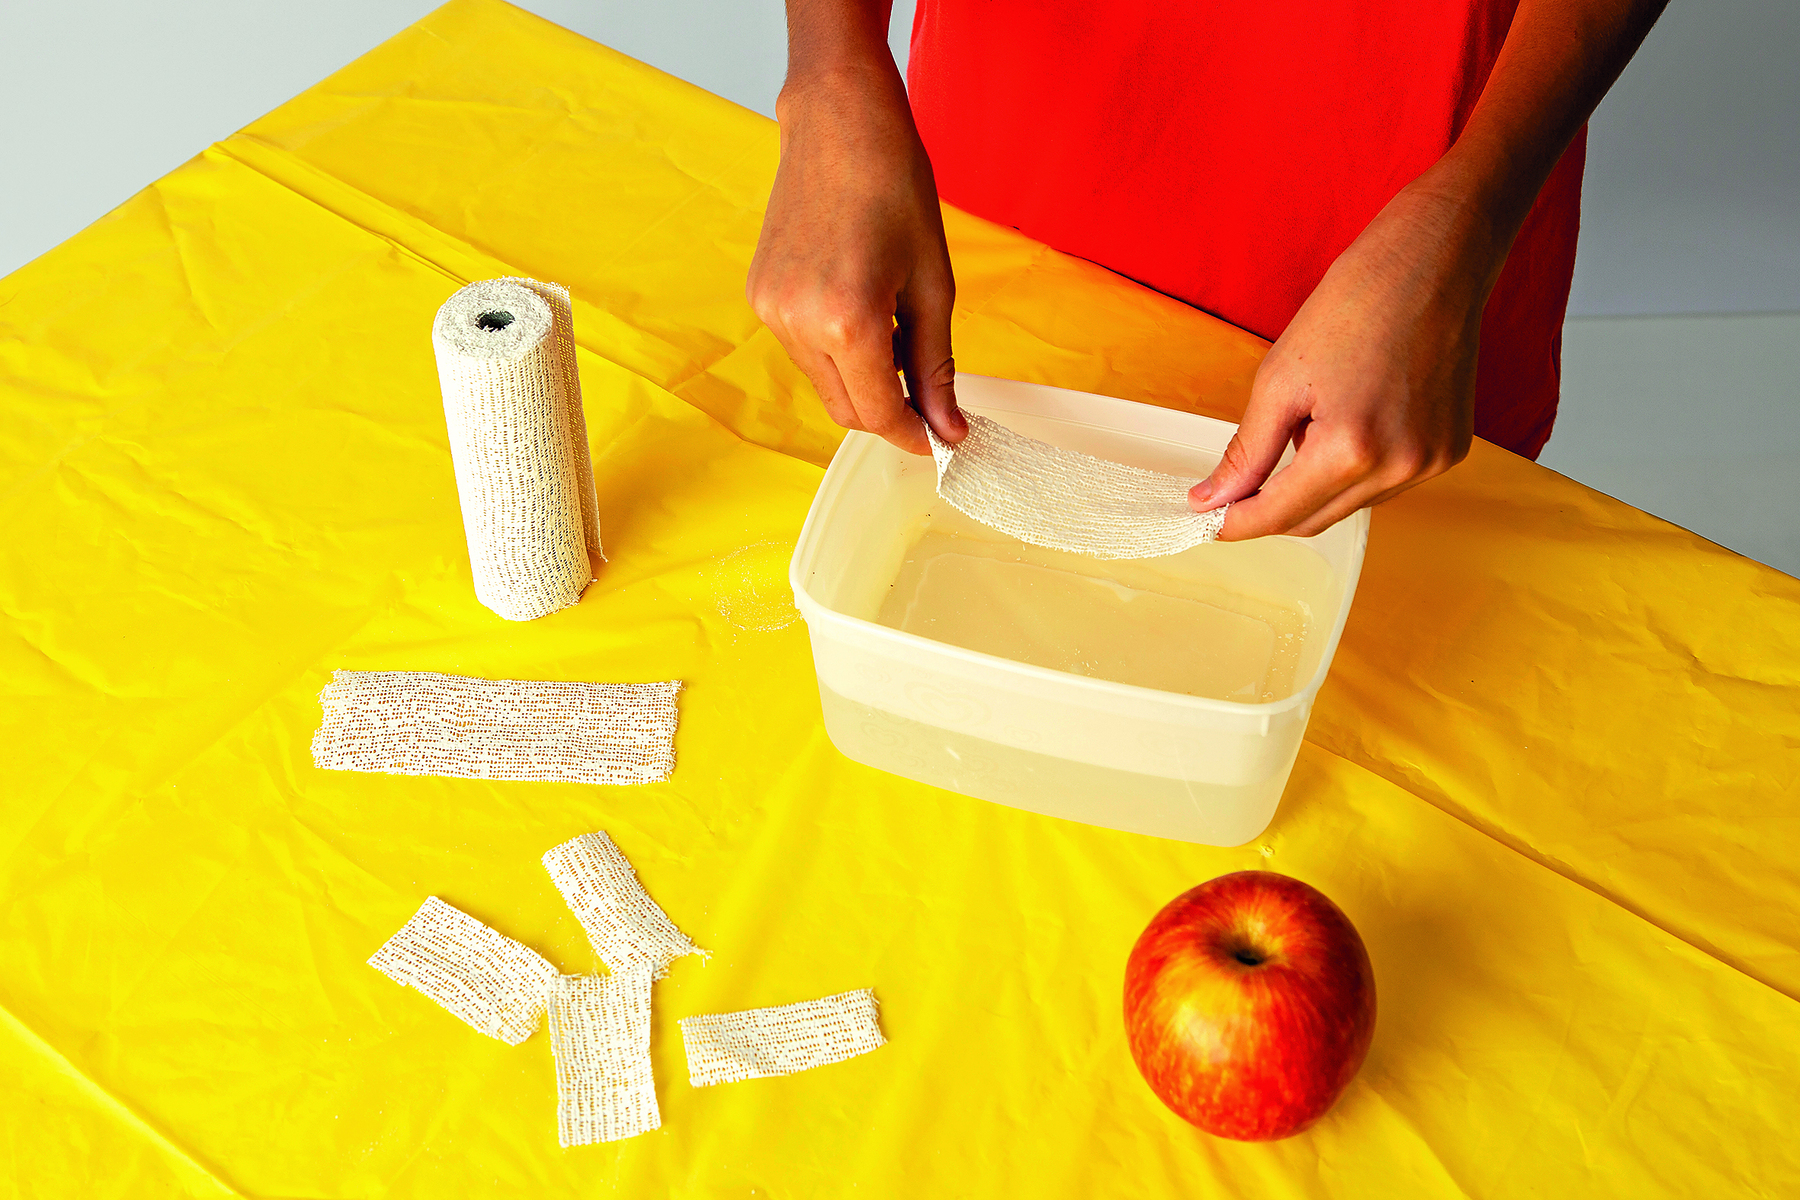 Fotografia. Detalhe de mãos segurando uma atadura acima de um pote com água sobre uma mesa coberta por uma toalha amarela. Ao lado, há um rolo de ataduras, pedaços de ataduras e uma maçã.